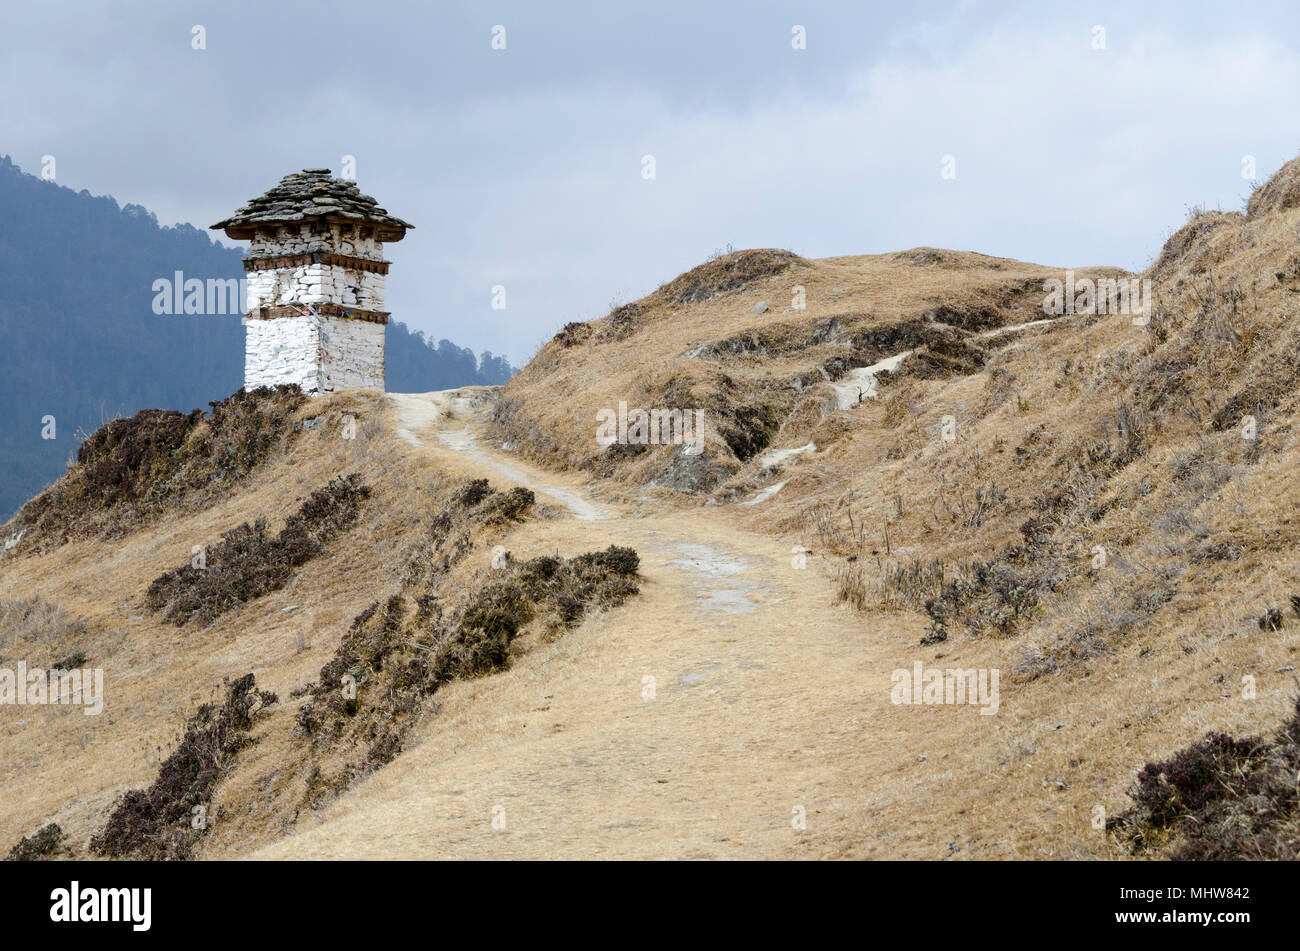 Mountain track with stupa, Phobjikha Valley, Wangdue Phodrang, Bhutan Stock Photo